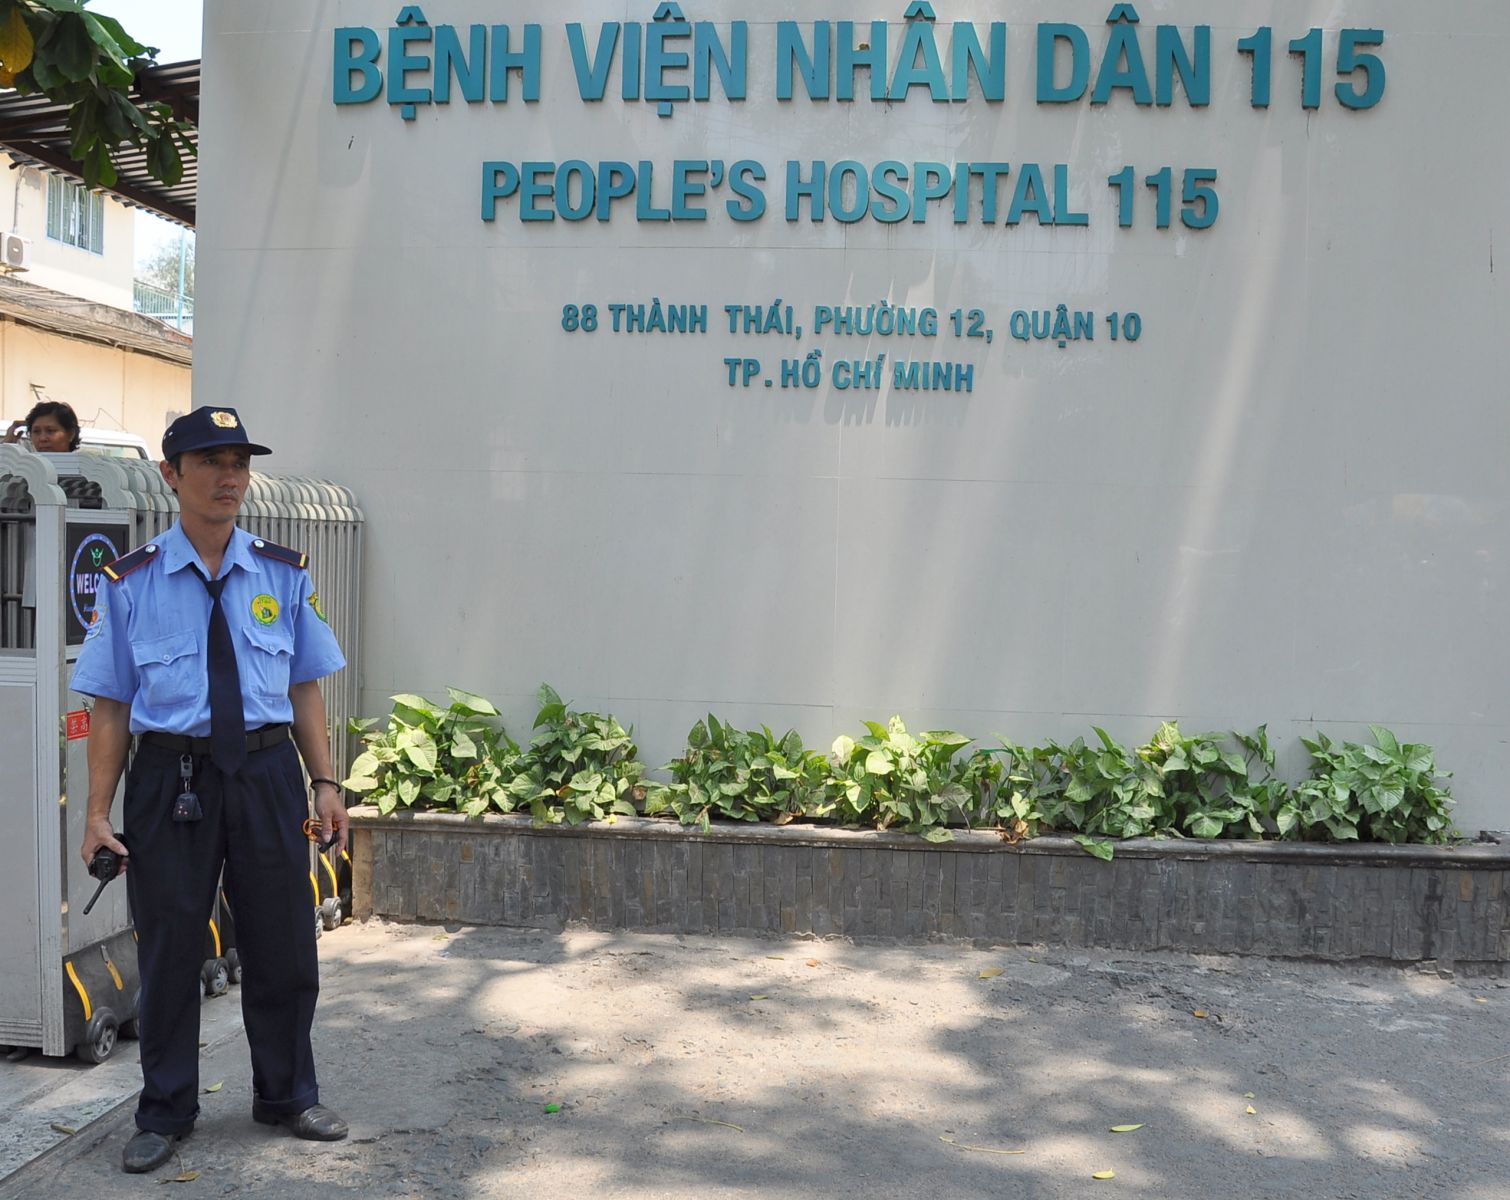 Bảo vệ bệnh viện - Chi nhánh Bình Dương, Hồ Chí Minh   - Công Ty TNHH Dịch Vụ Bảo Vệ Vệ Sĩ Nam Việt